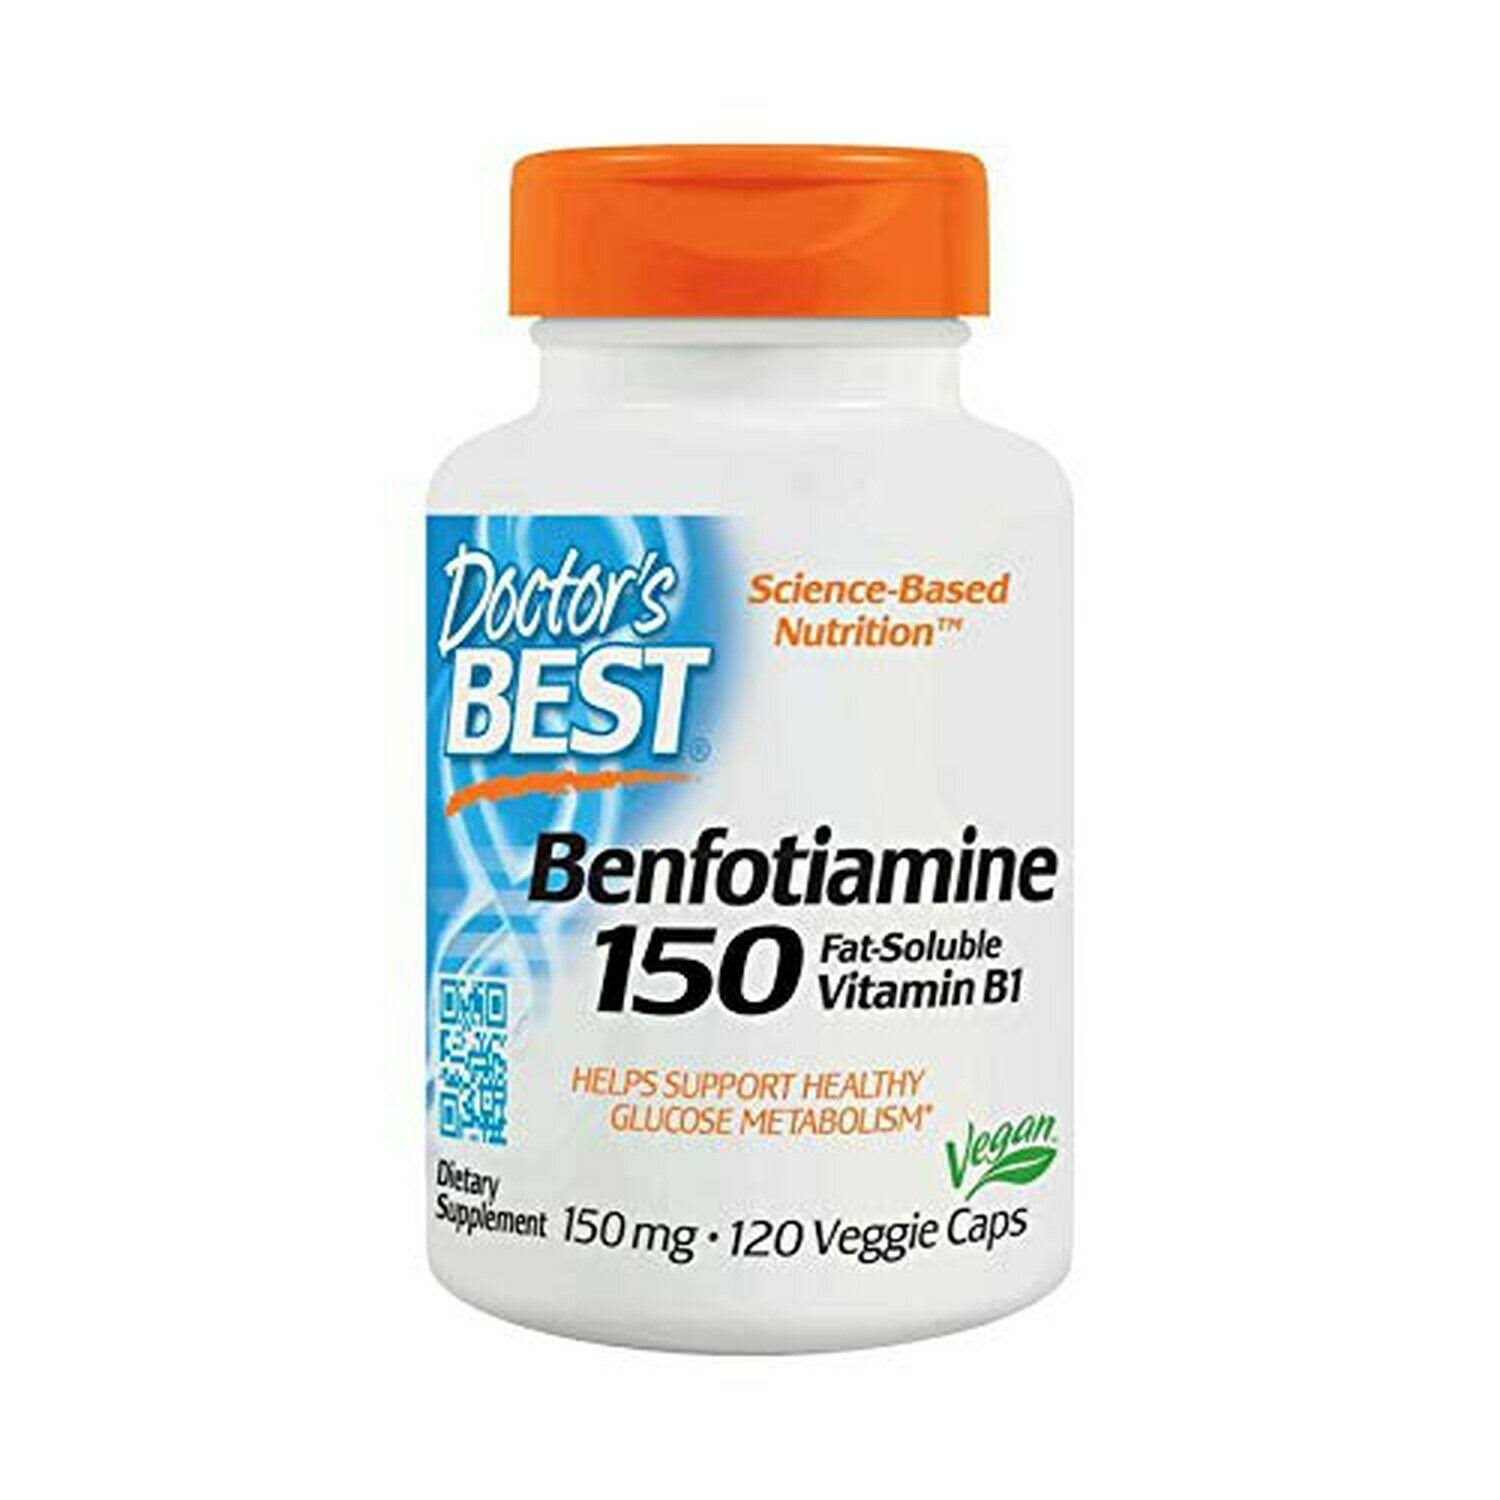 Doctor's Best Benfotiamine - 150mg, 120 Vcaps